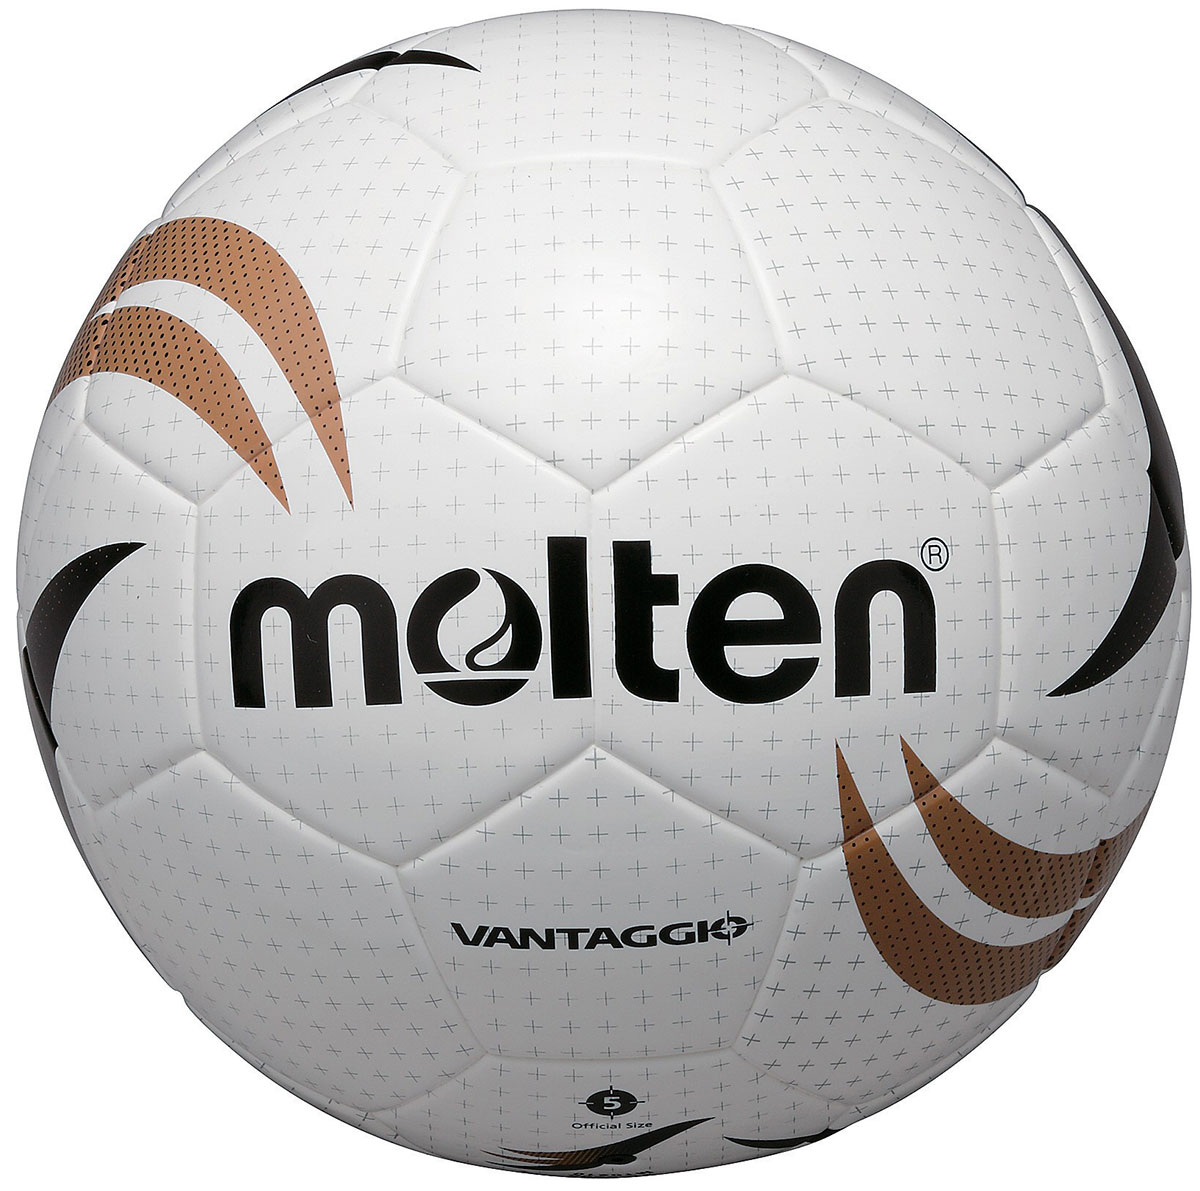 Molten VG-2501 Football